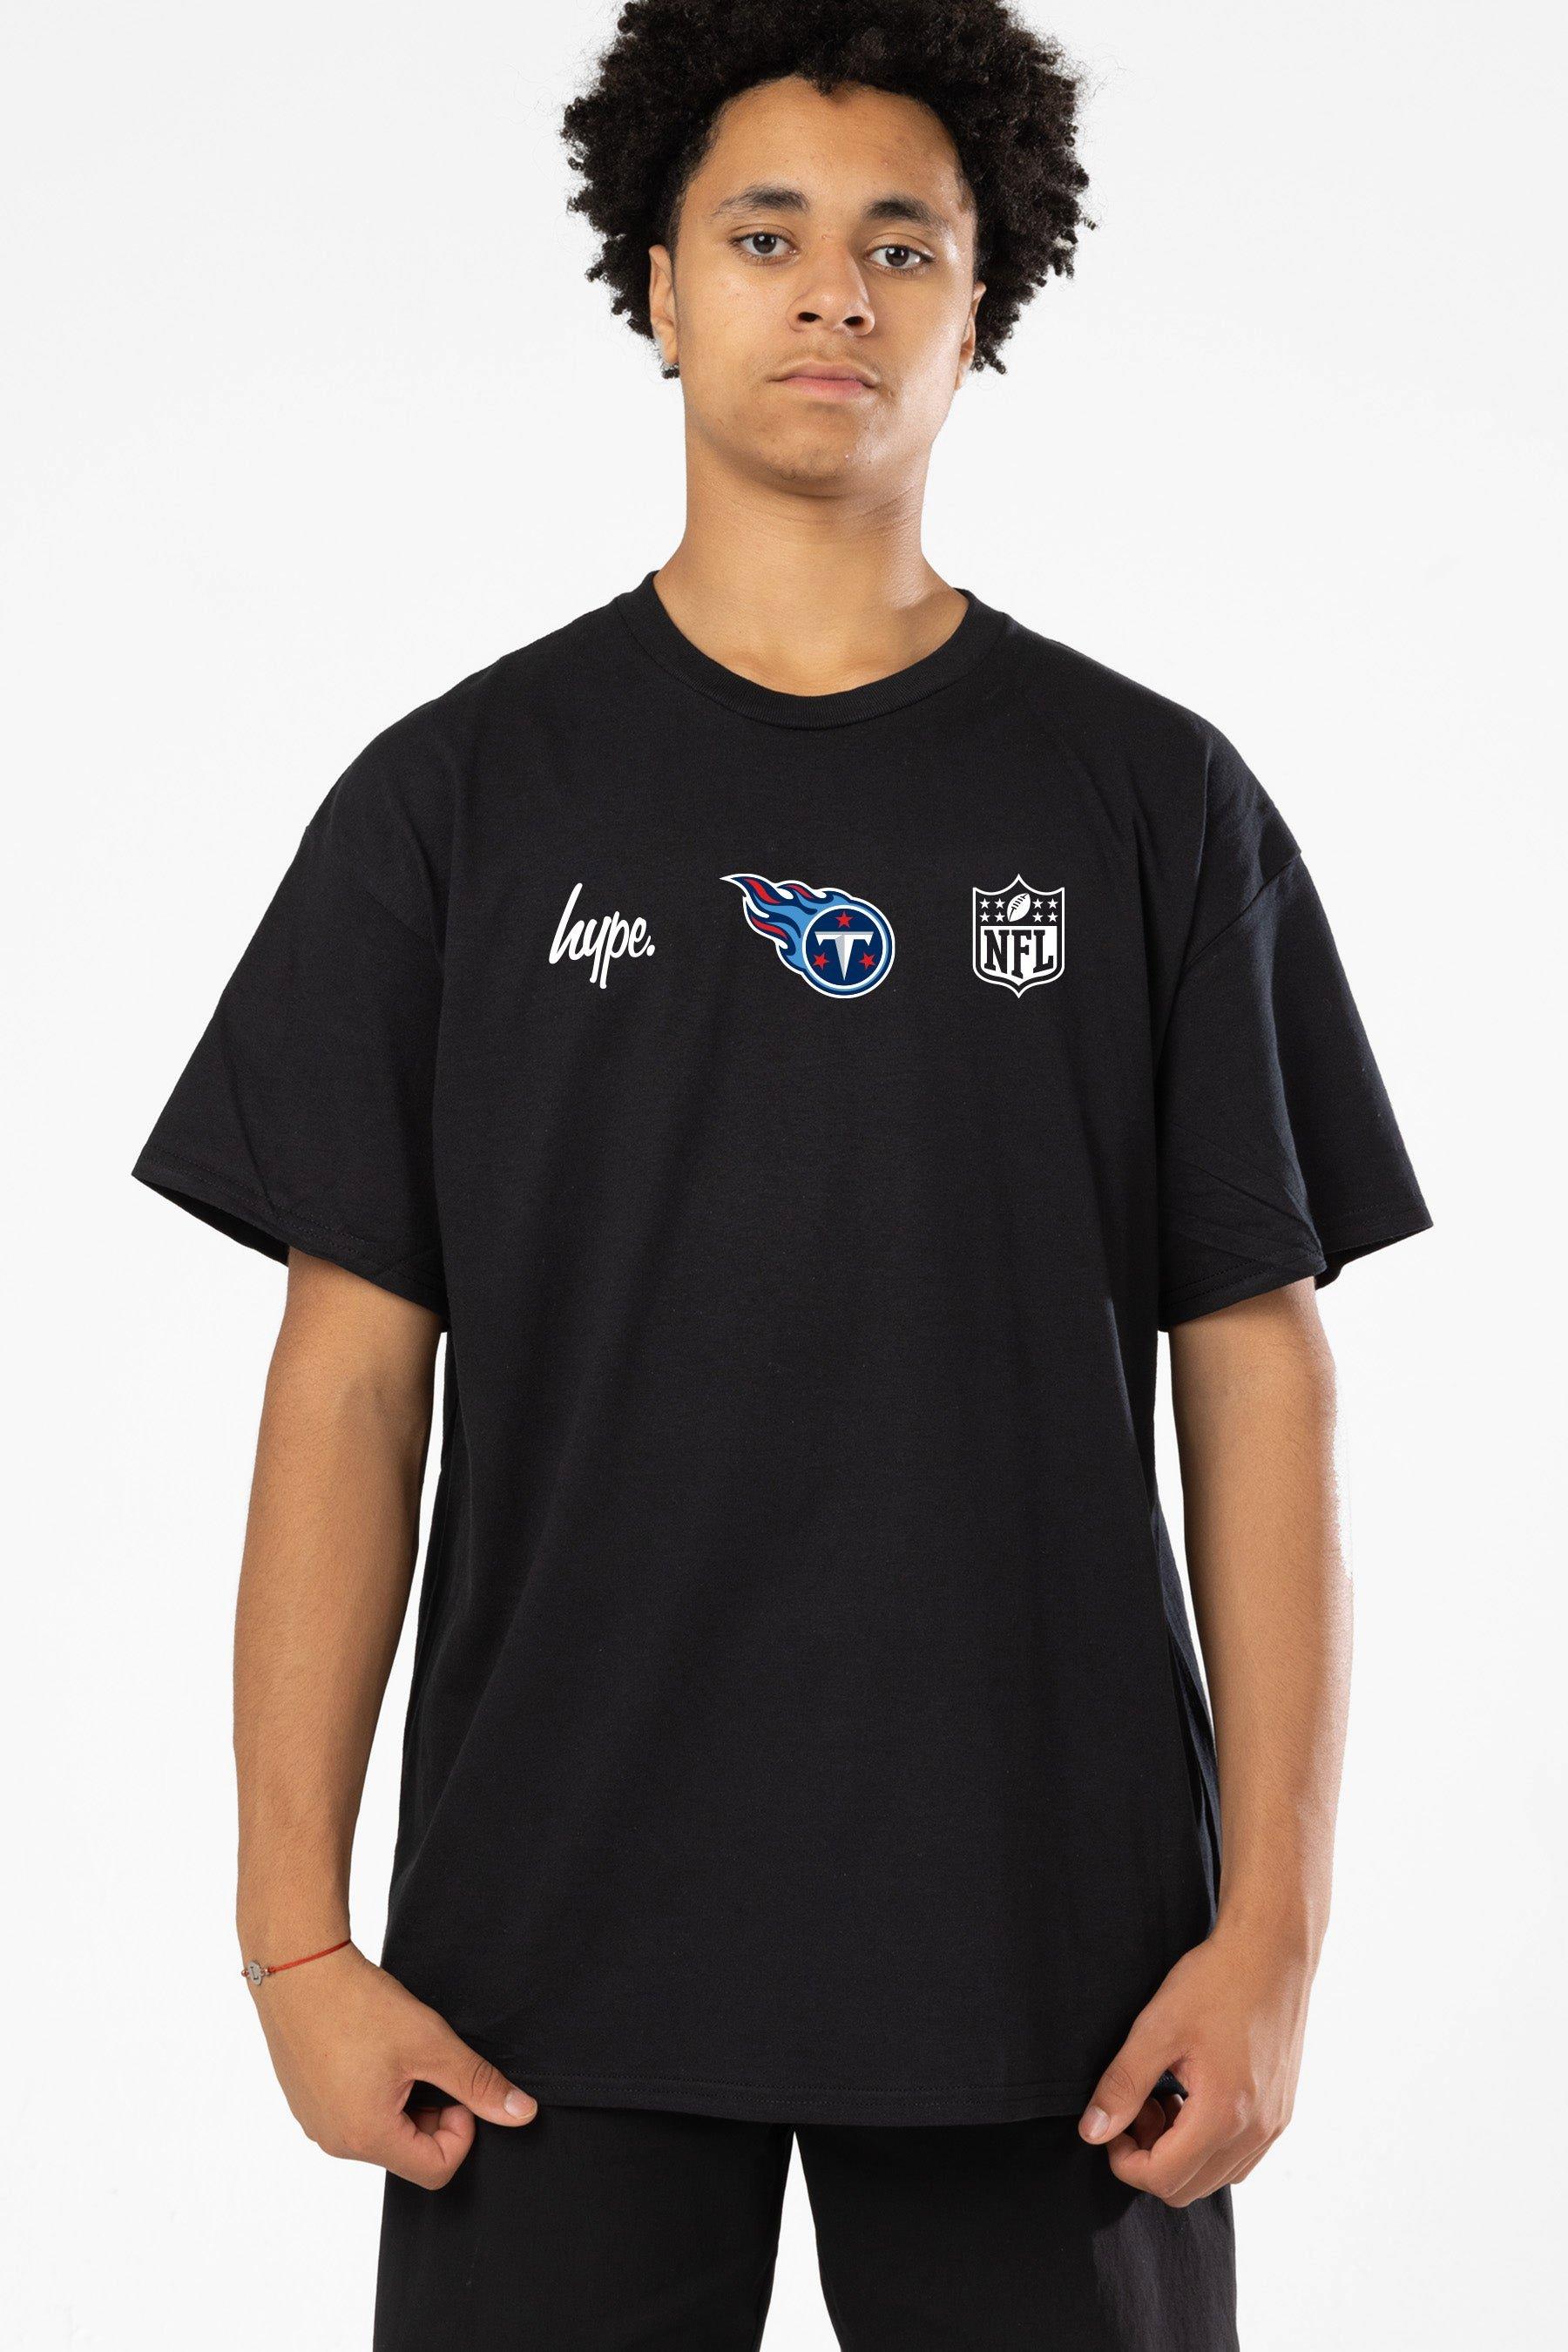 NFL X Tennessee Titans T-Shirt